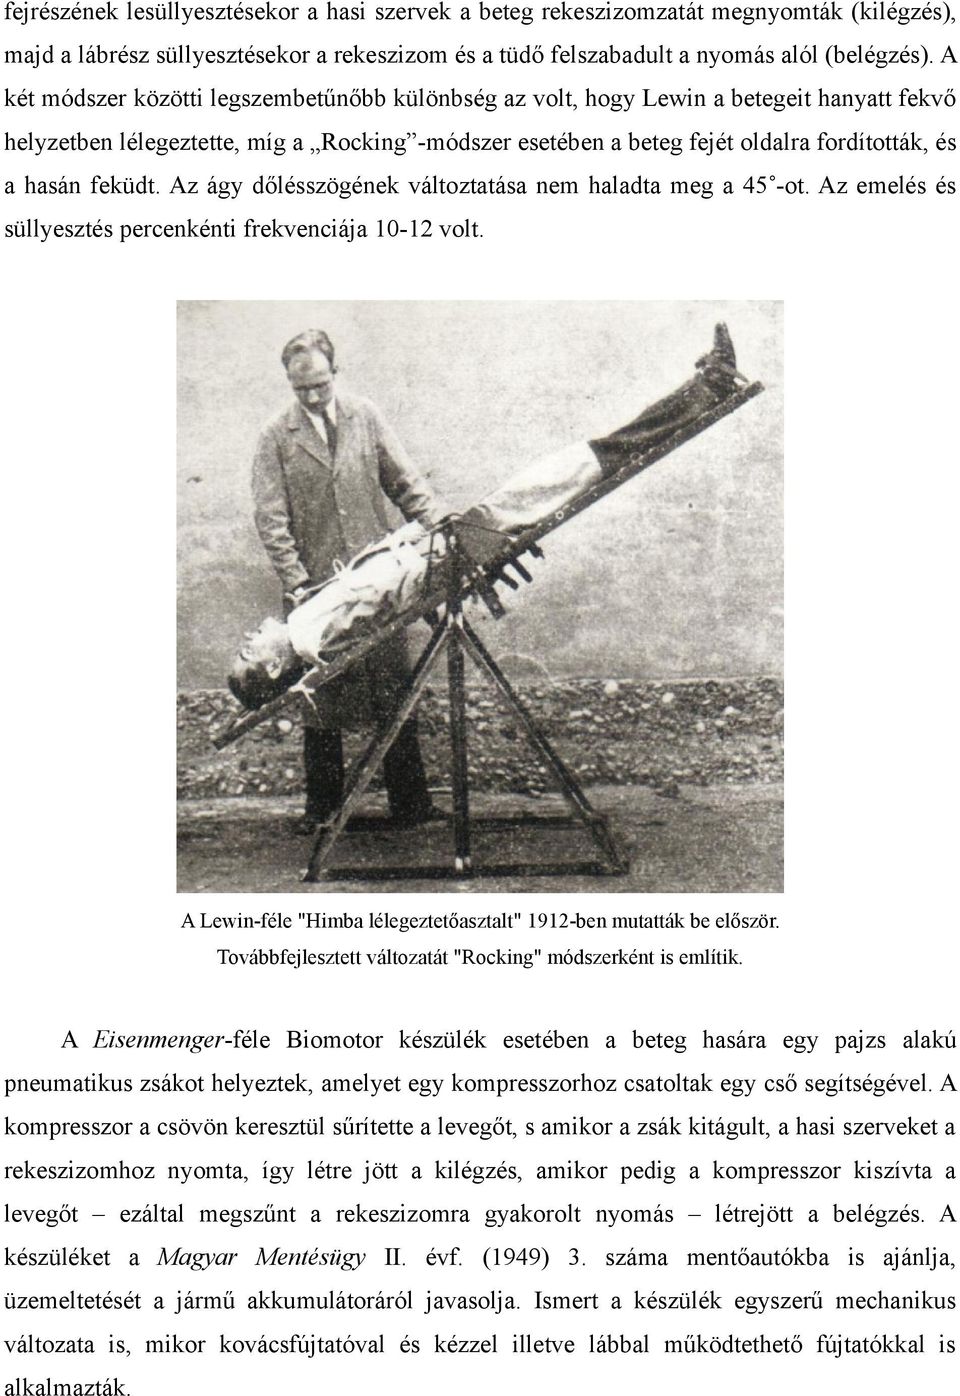 feküdt. Az ágy dőlésszögének változtatása nem haladta meg a 45 -ot. Az emelés és süllyesztés percenkénti frekvenciája 10-12 volt. A Lewin-féle "Himba lélegeztetőasztalt" 1912-ben mutatták be először.